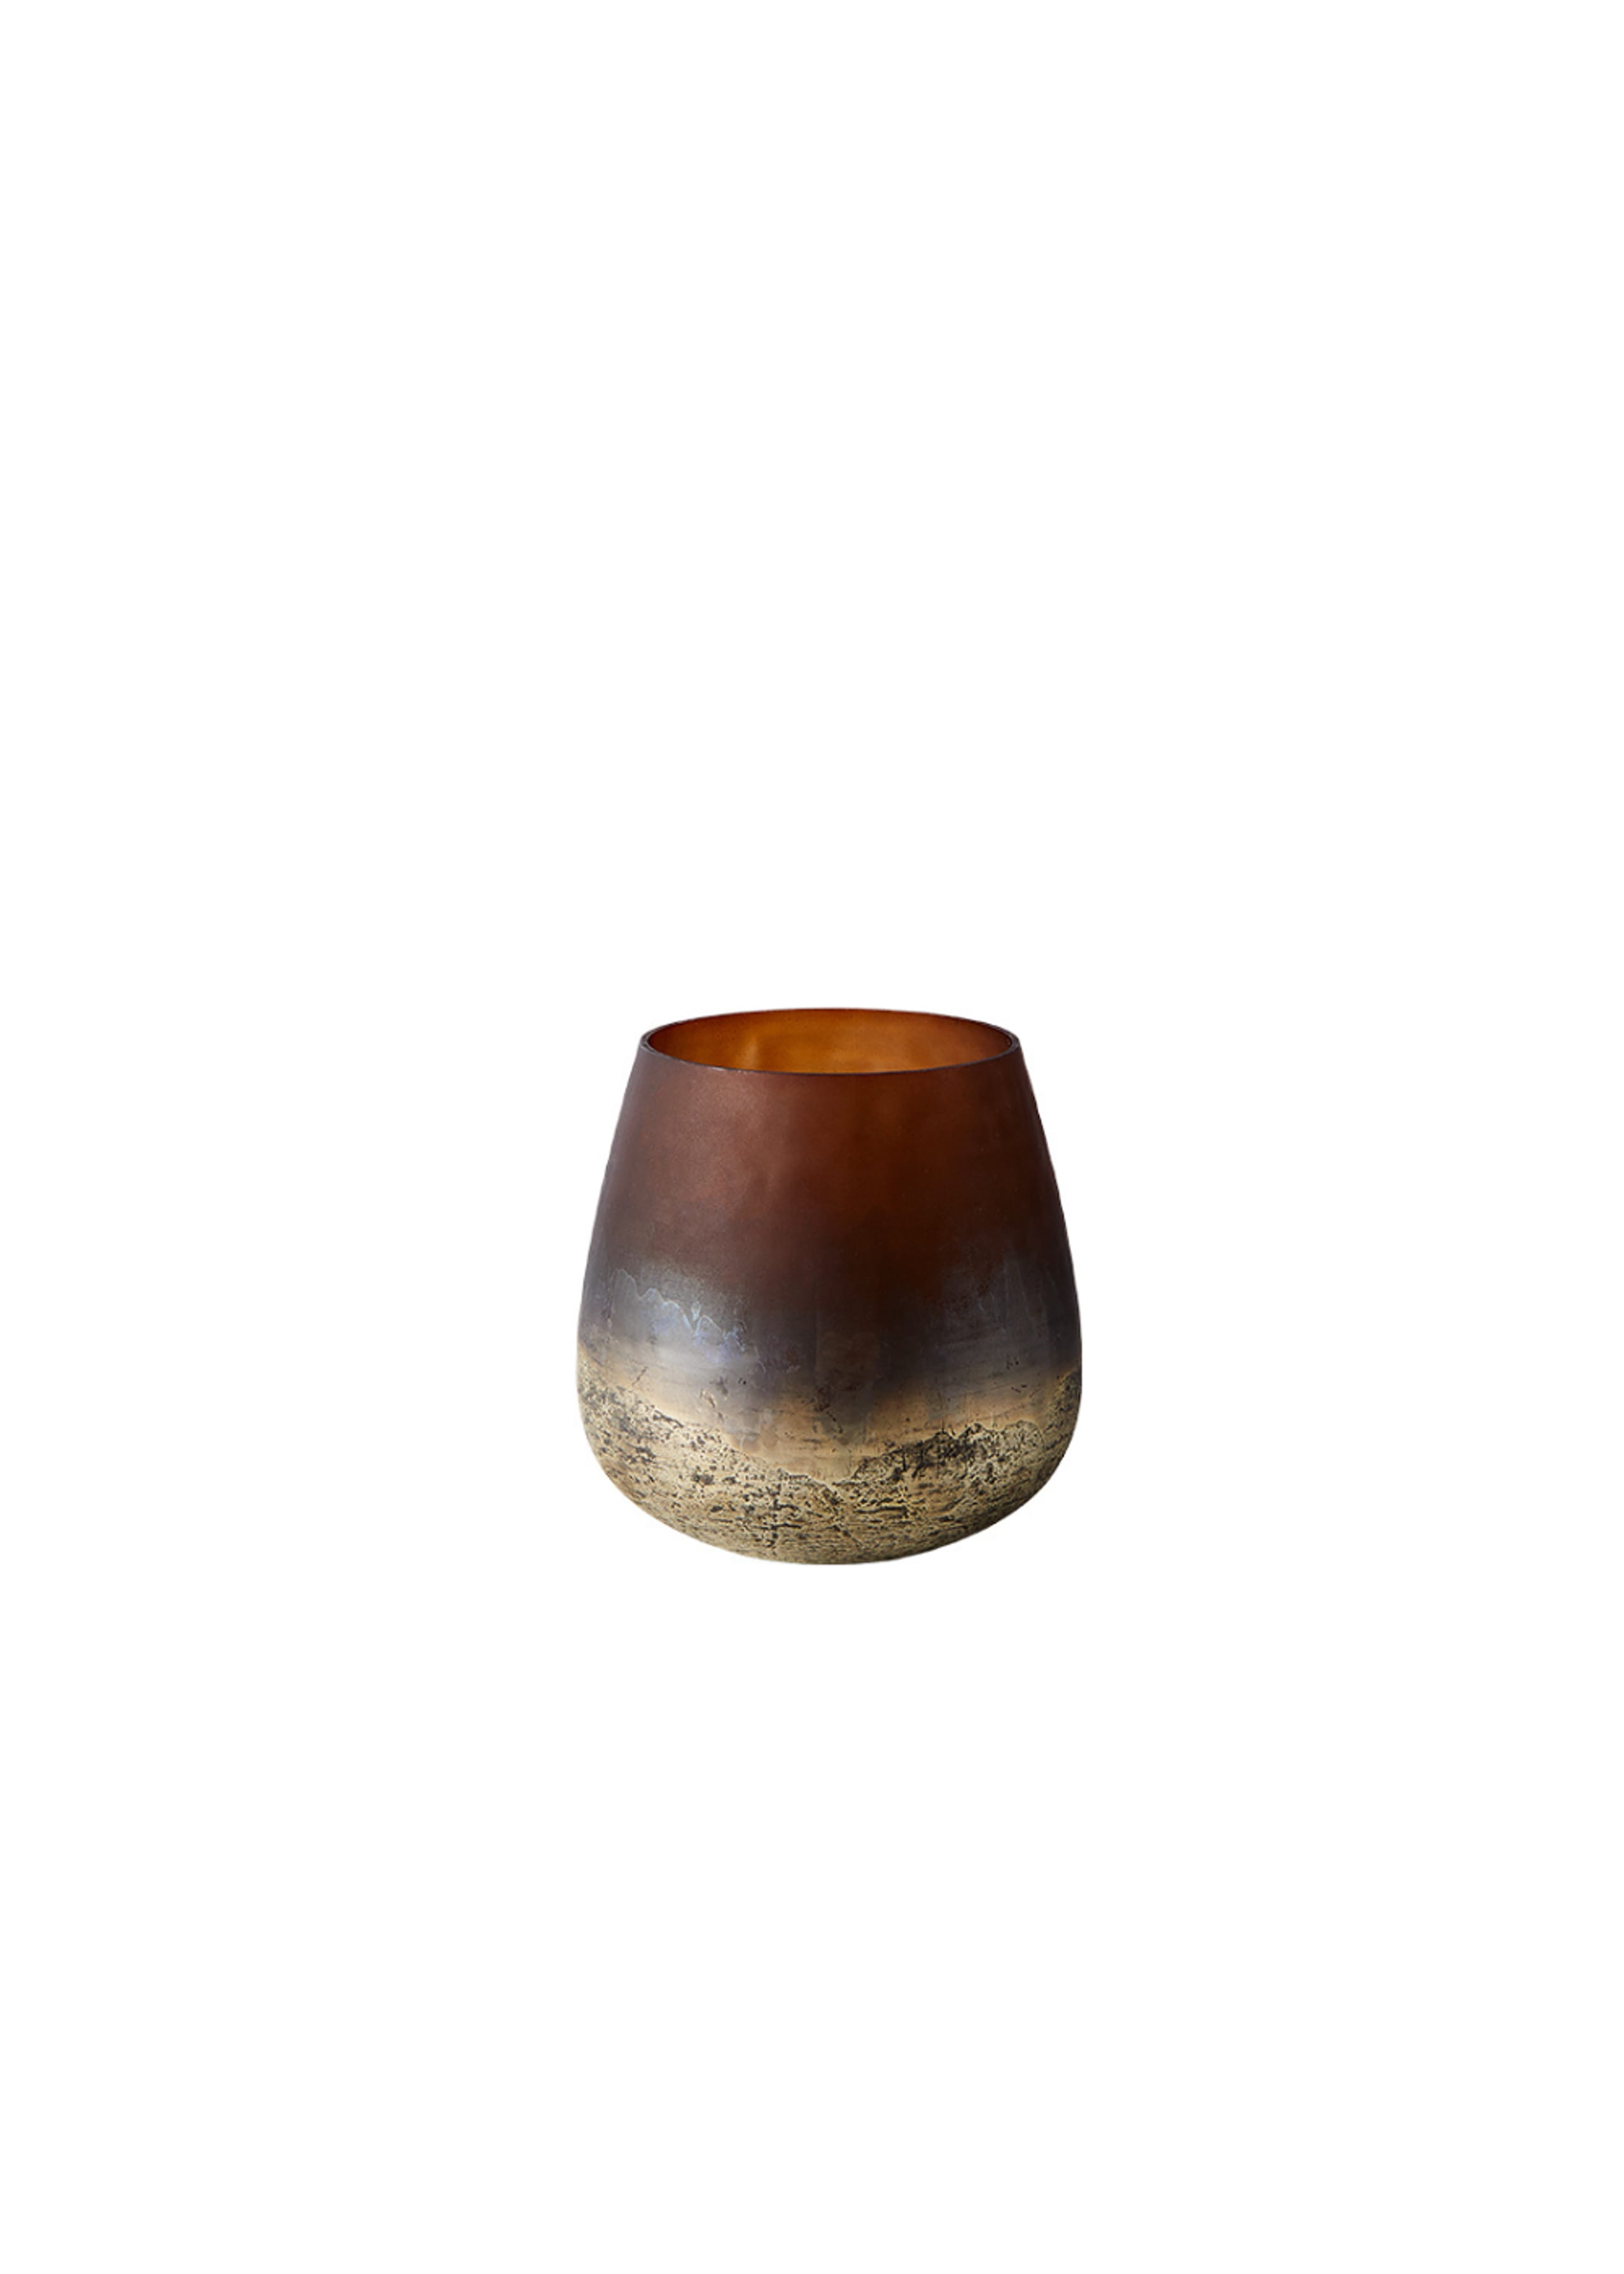 MUUBS - Lantaarn - Vase Lana - Vase Lana 15 - Brown/Gold